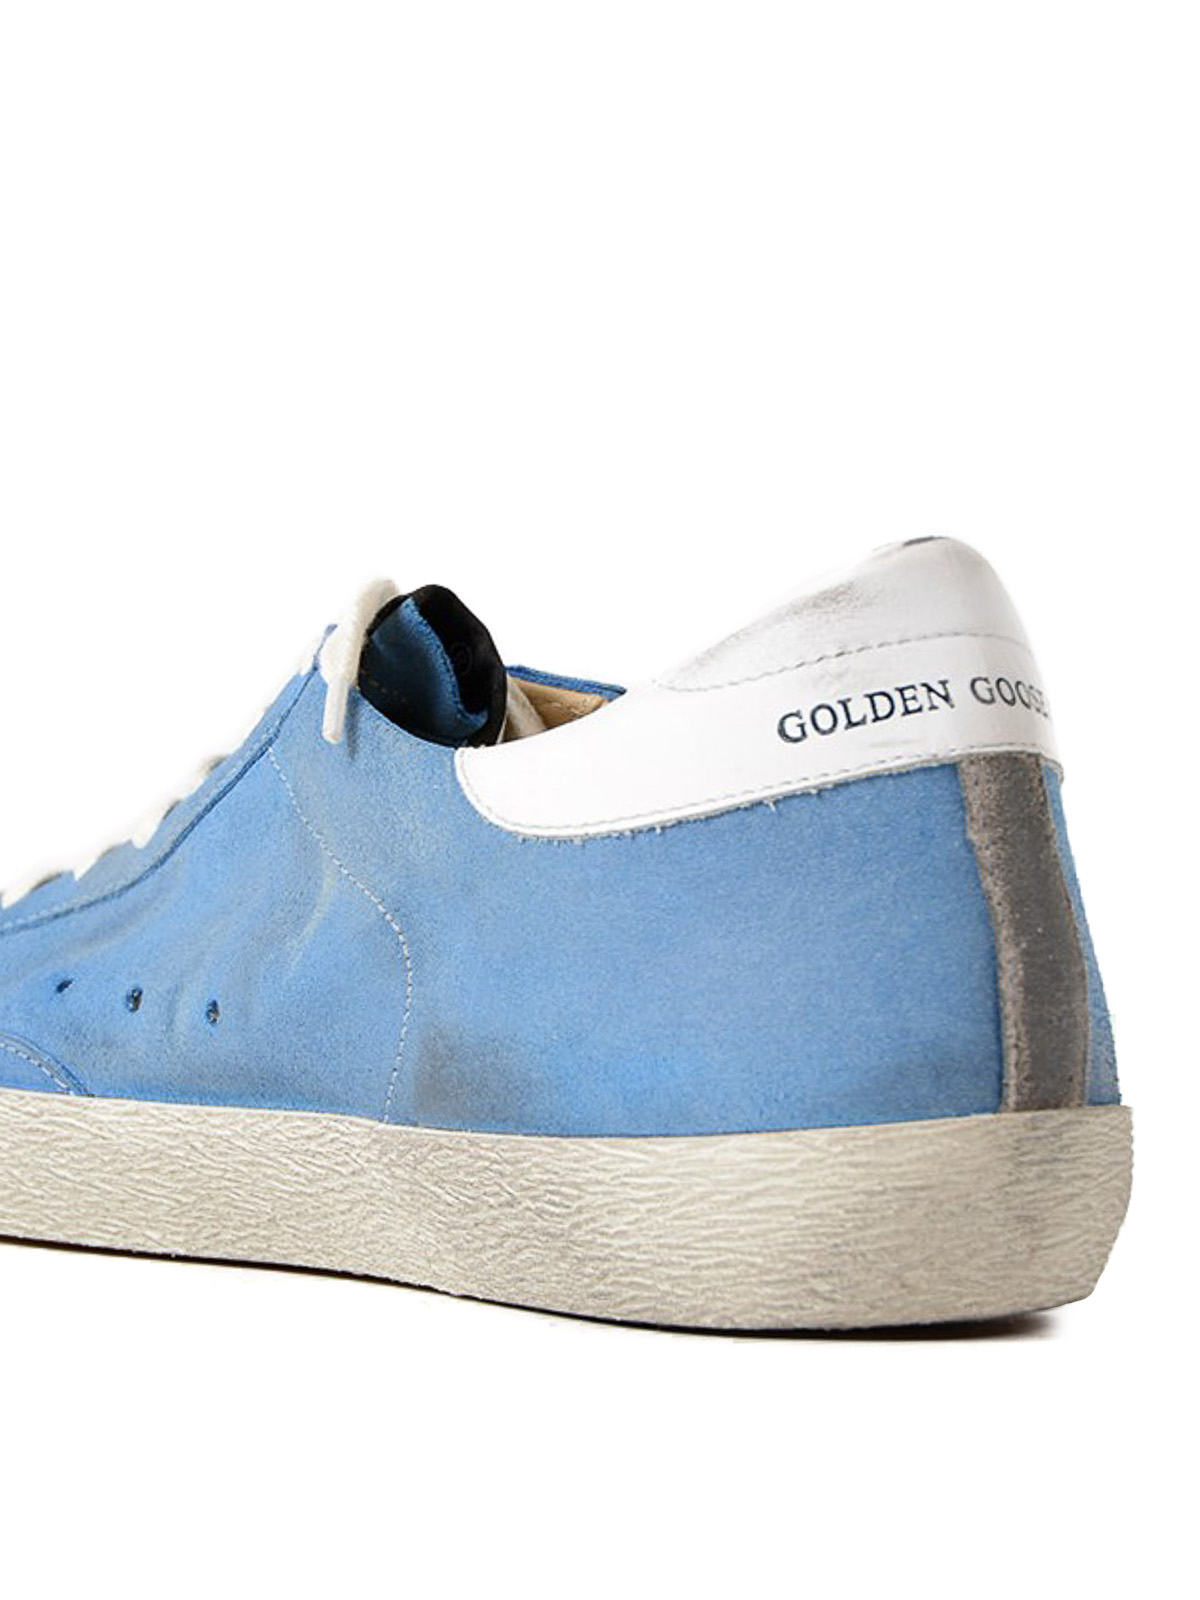 golden goose blue sneakers